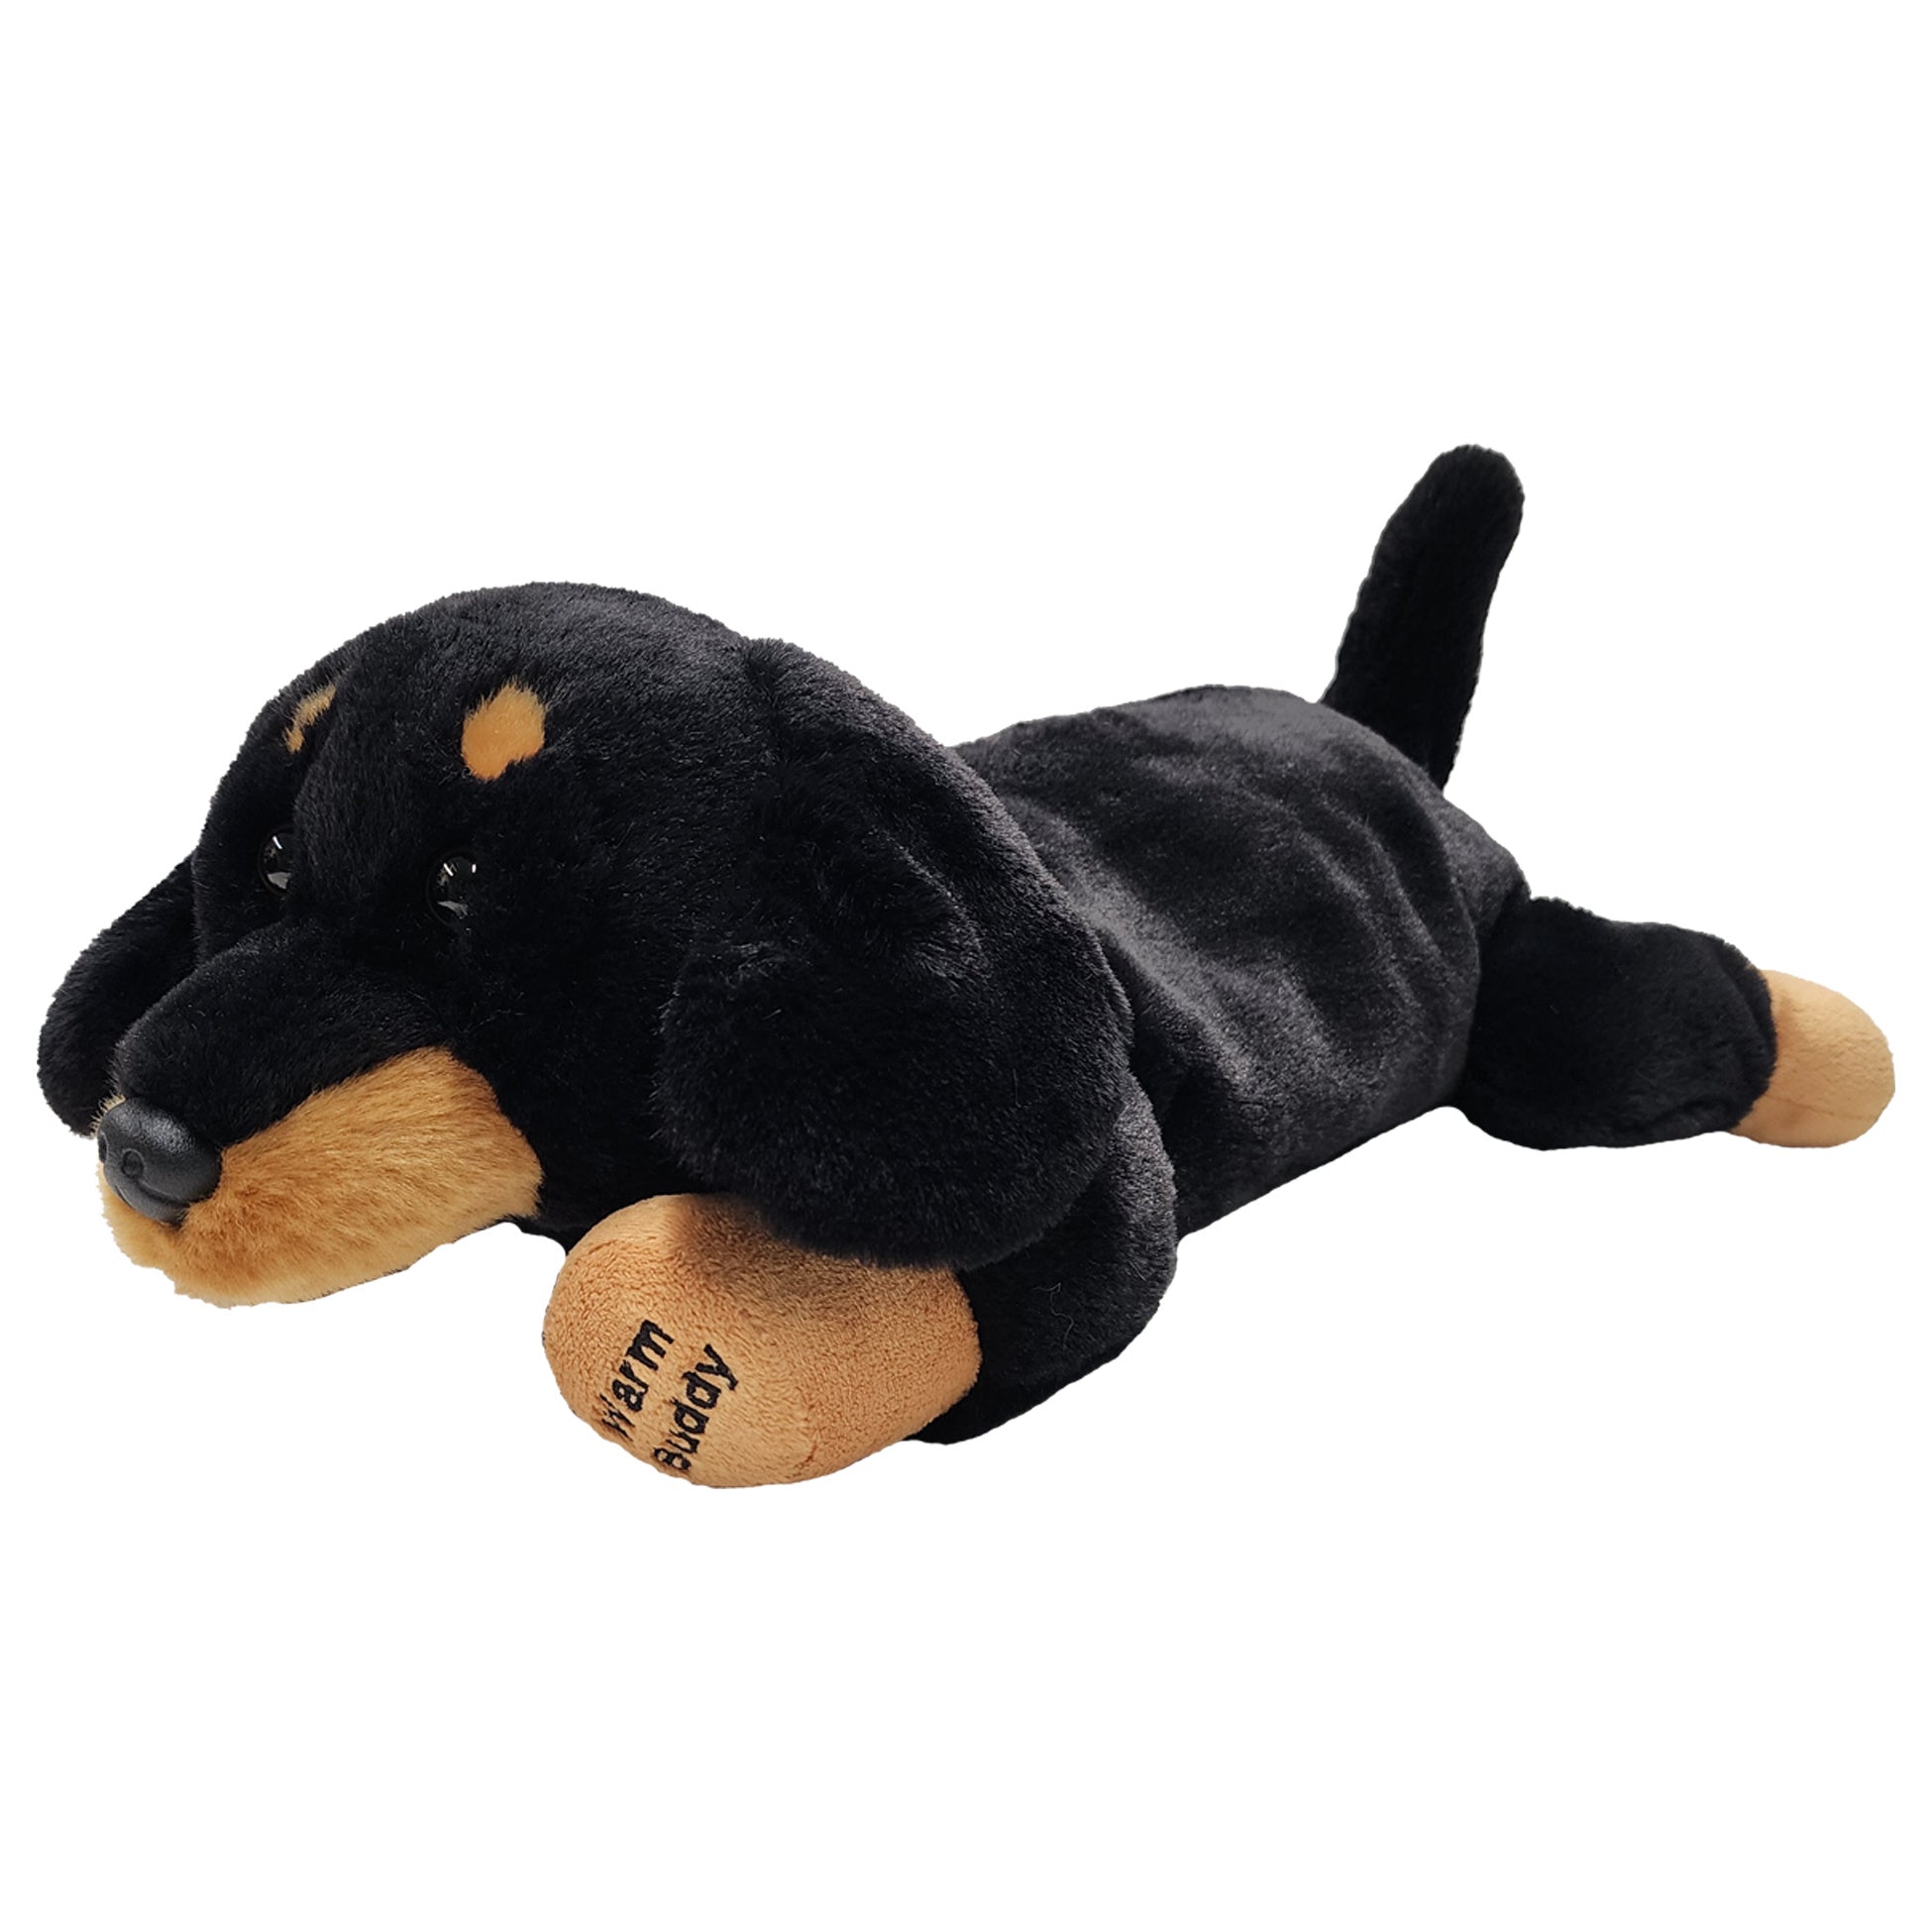 Cuddle Buddy Dachshund - Heated Stuffed Animal